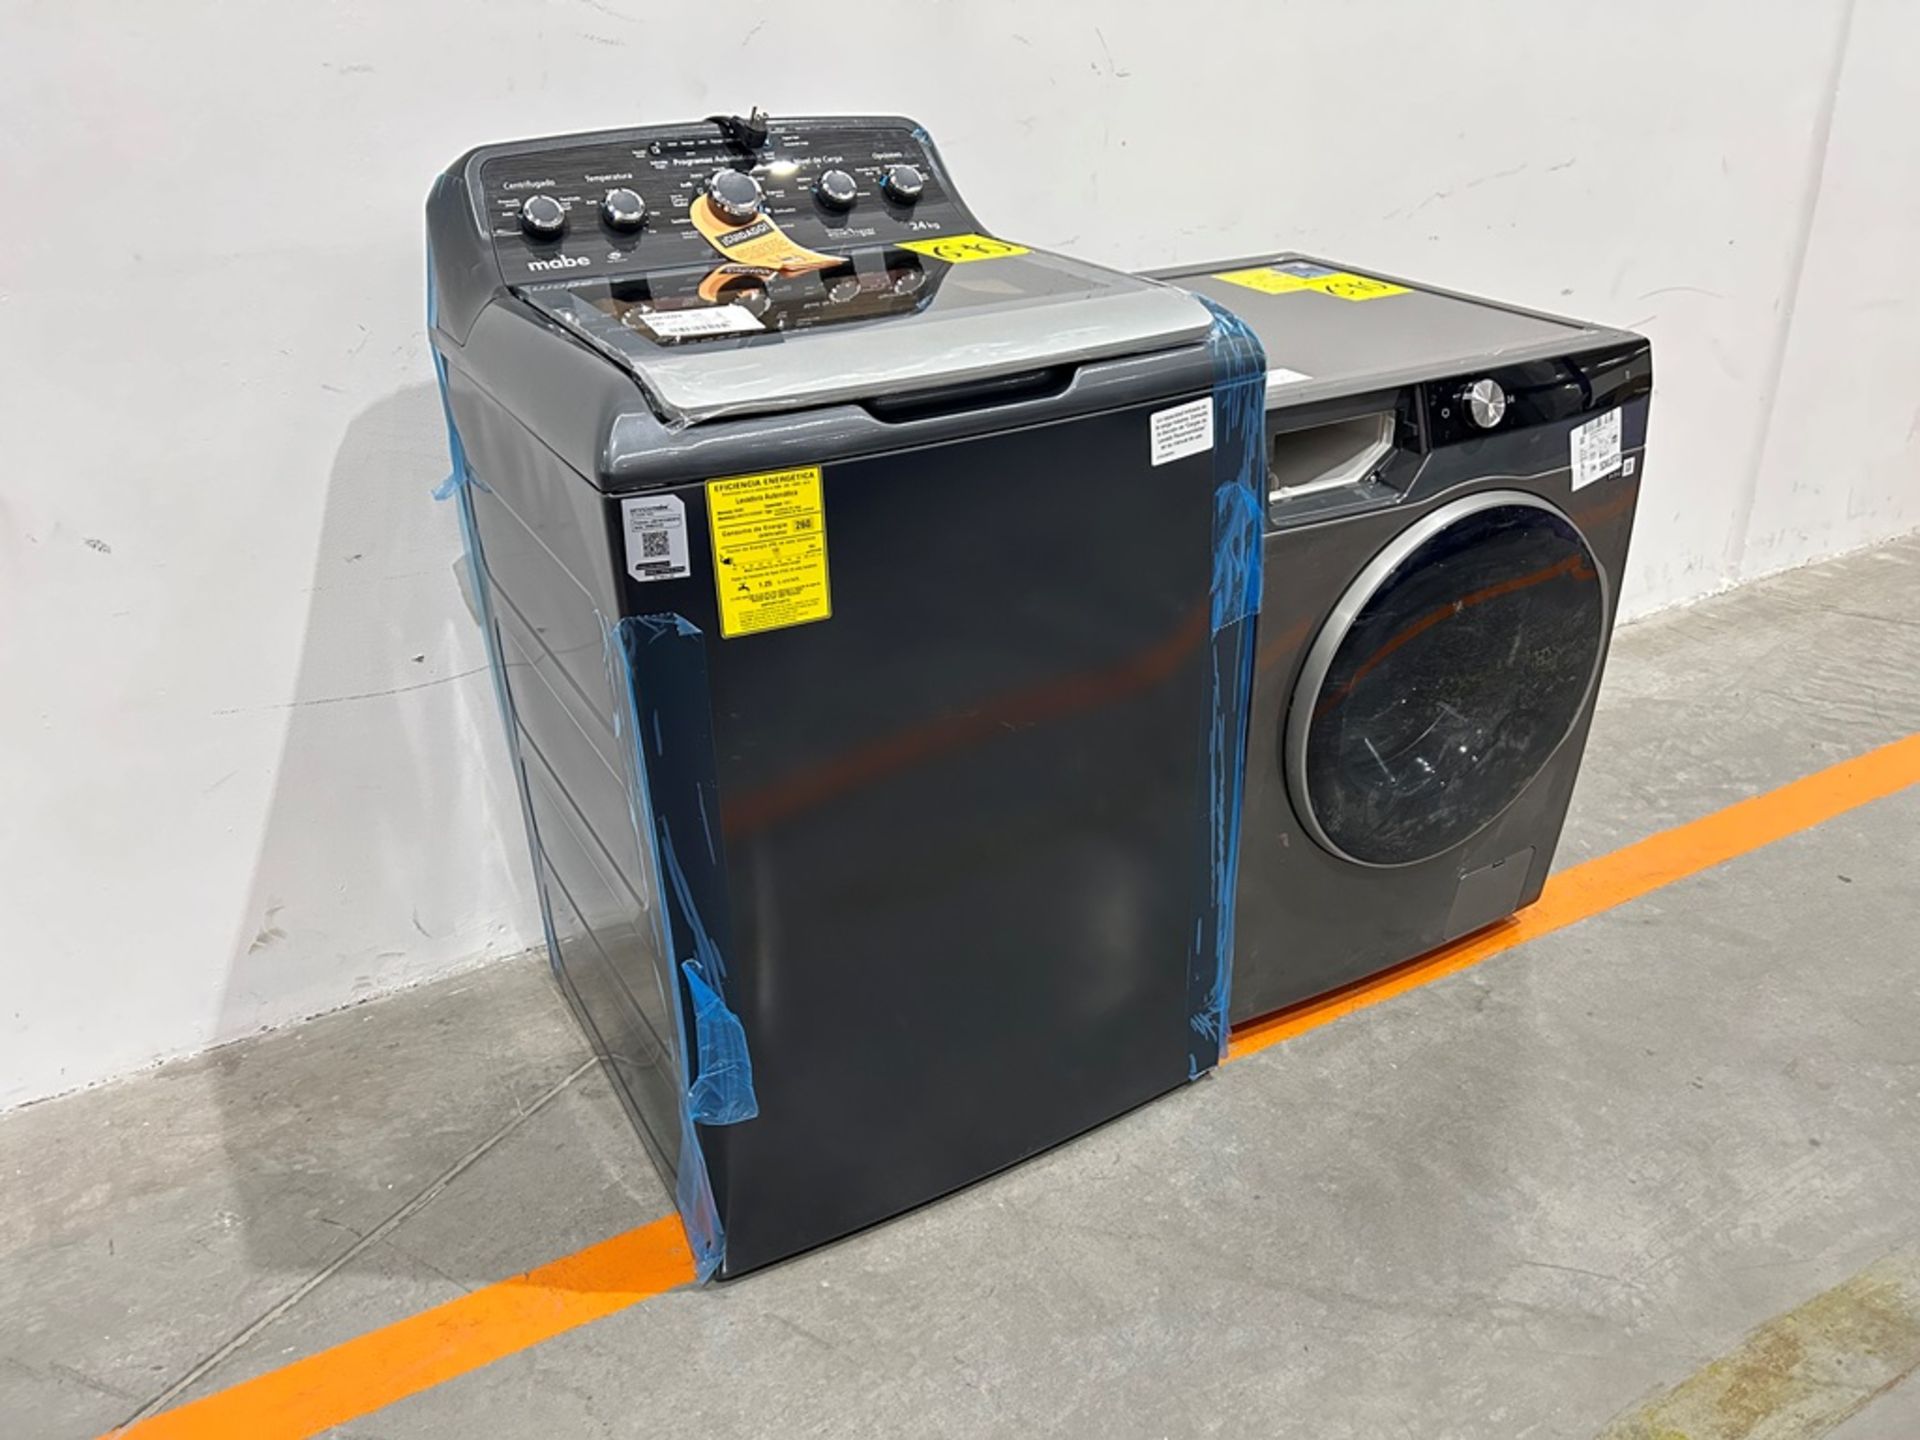 Lote de 2 lavadoras contiene: 1 Lavadora de 24 KG Marca MABE, Modelo LMA742115WDAB10, Serie S15124, - Image 3 of 10